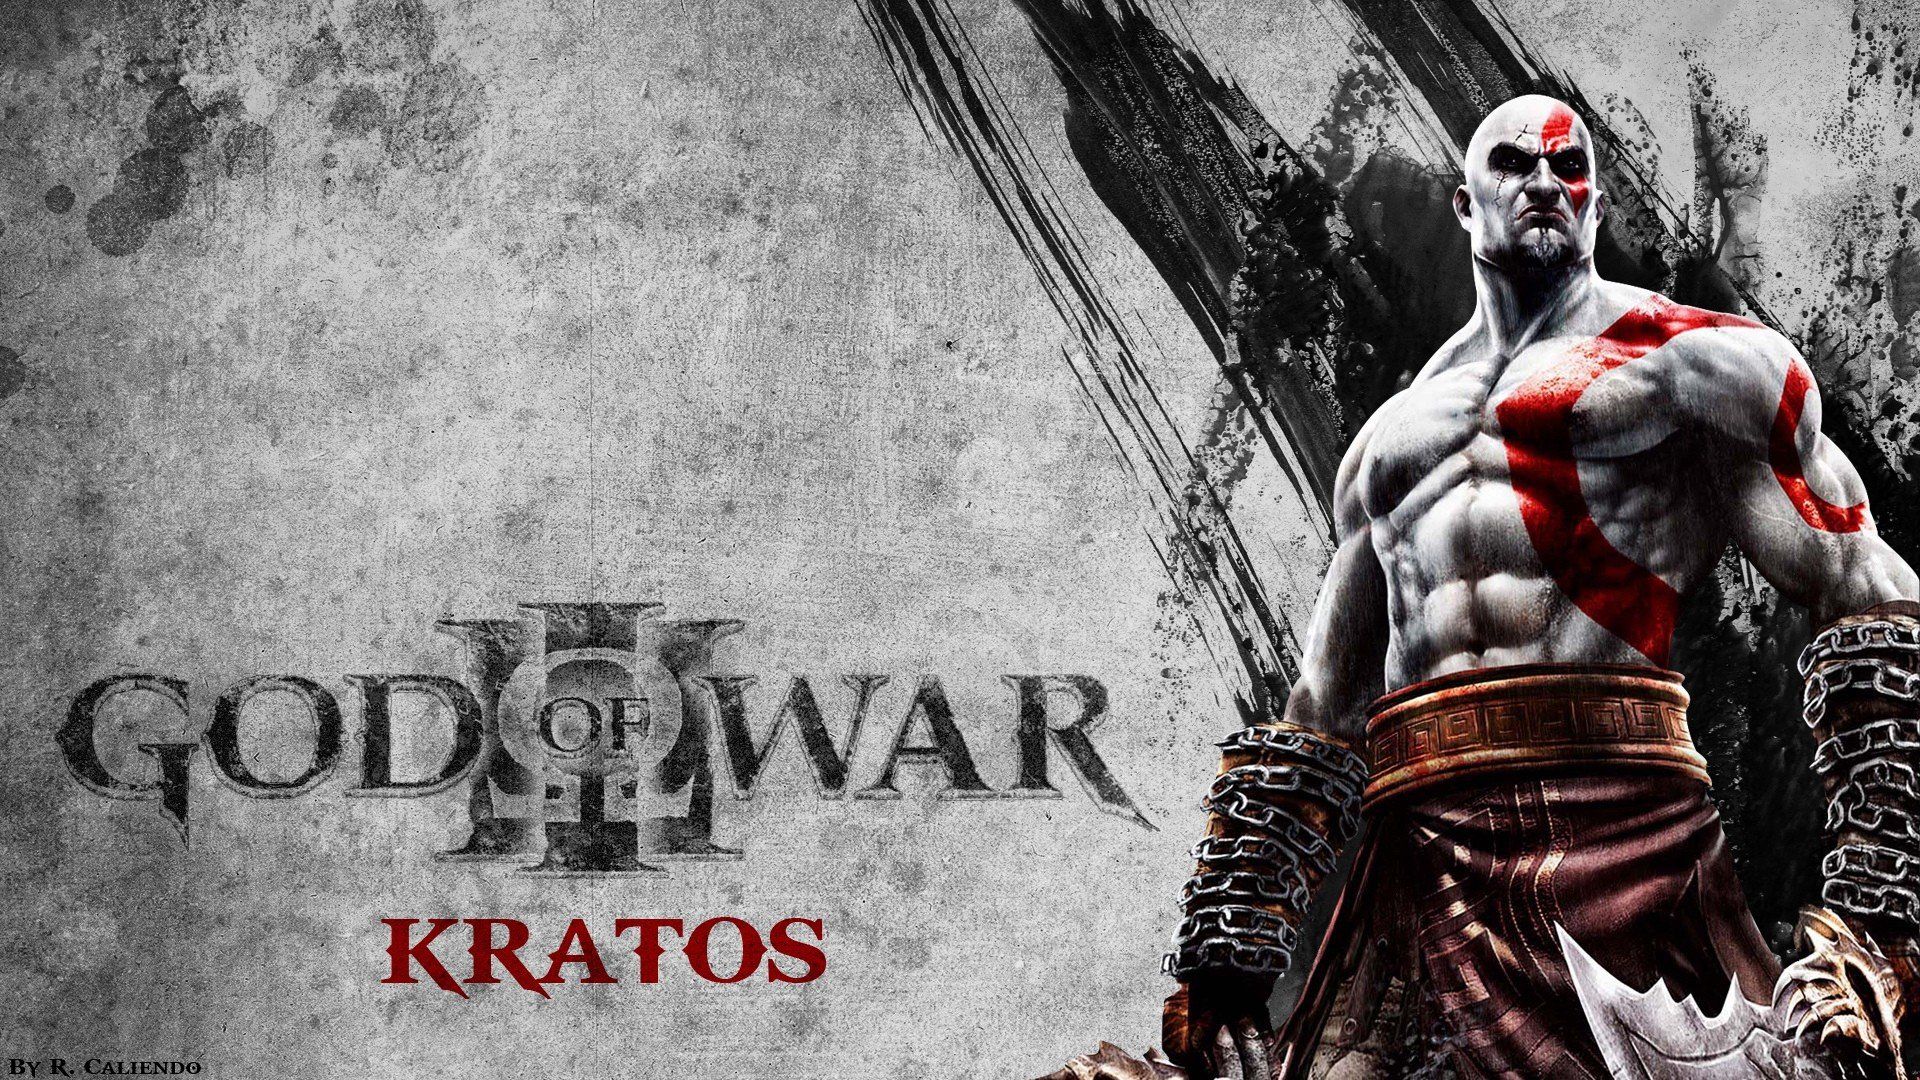 Kratos God of War pc games wallpaper 1920x1080 262535